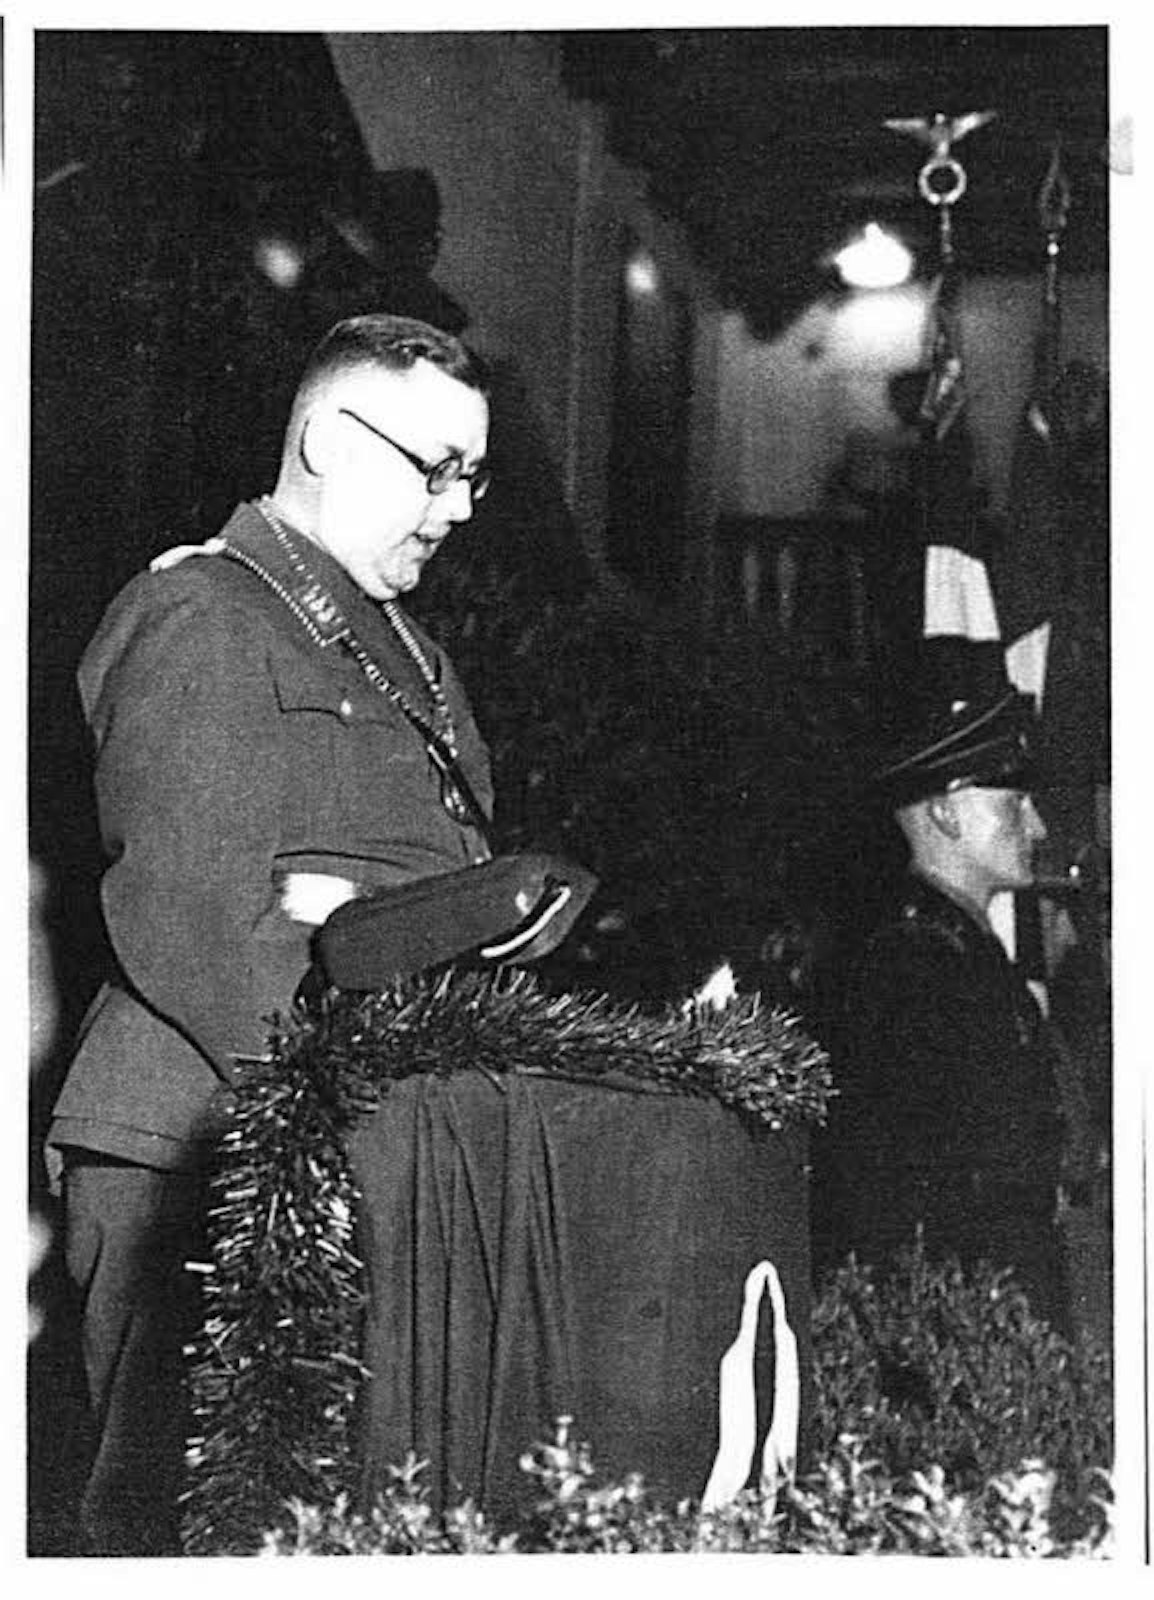 Grimm bei der Amtseinführung in Thüringen, offensichtlich in SA-Uniform am 1. April 1936.